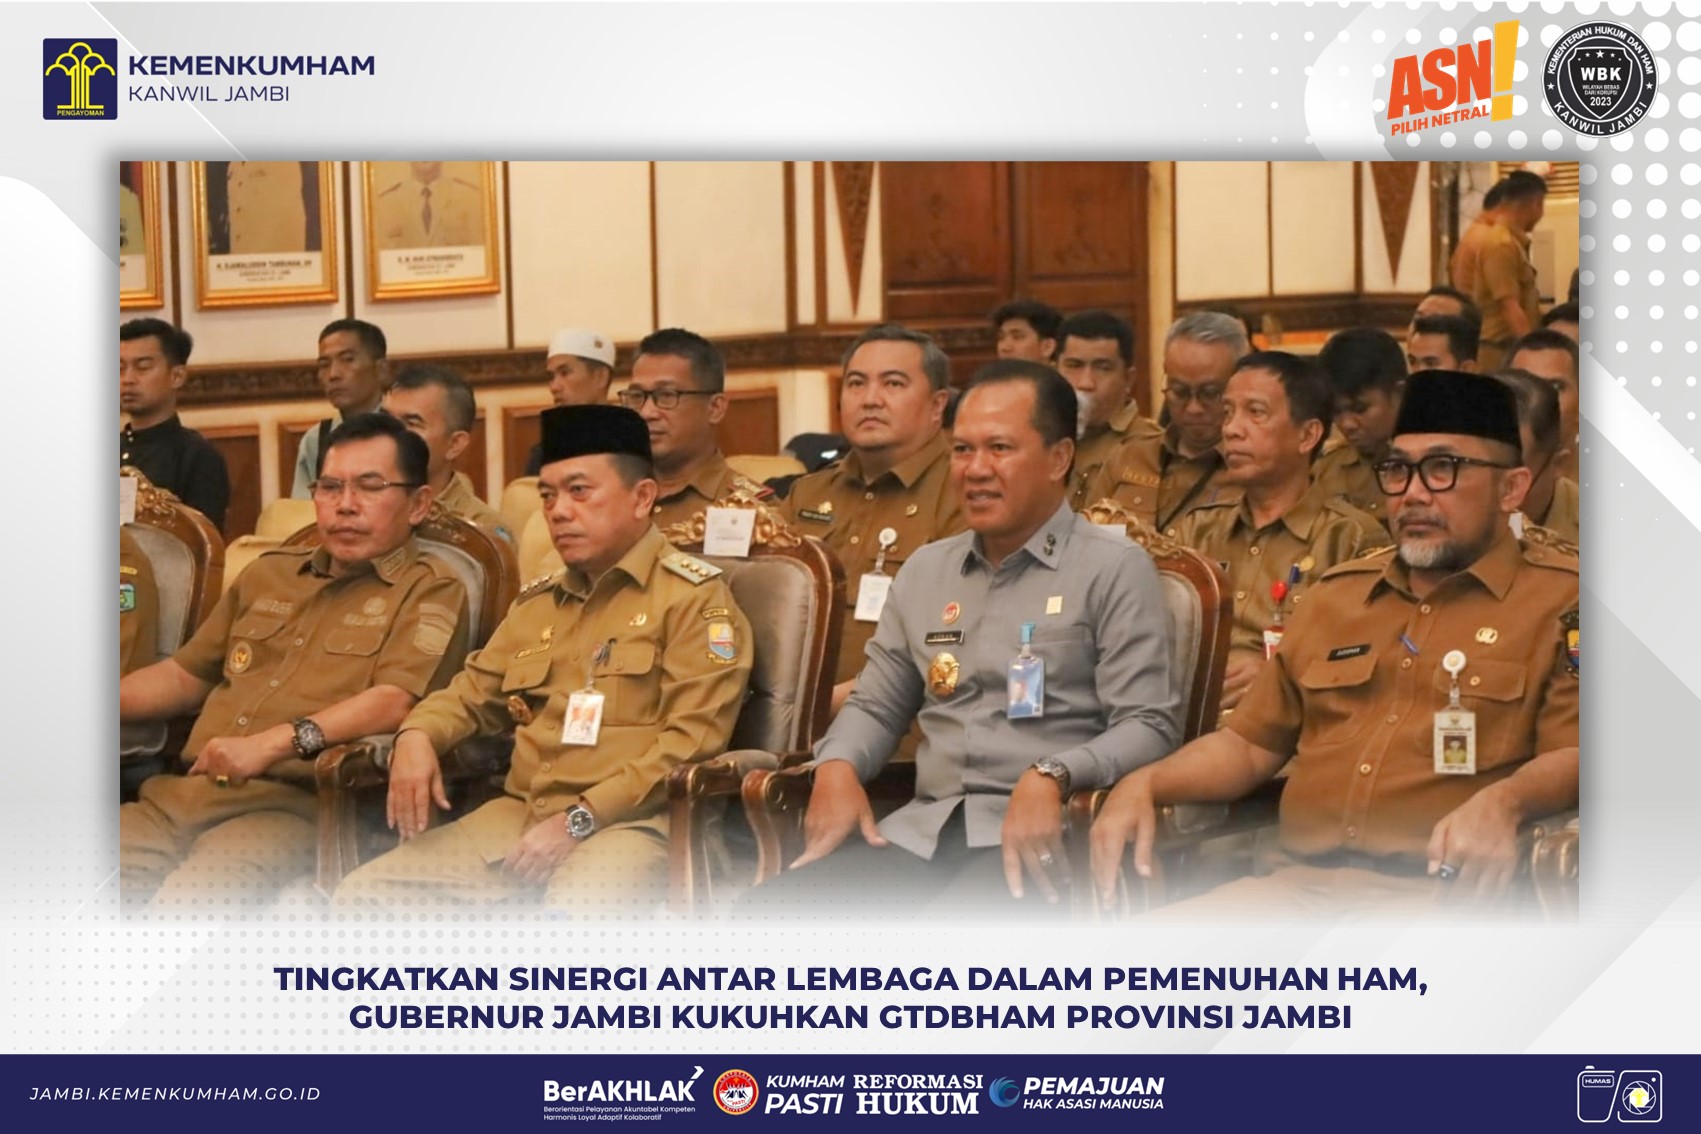 Tingkatkan Sinergi Antar Lembaga dalam Pemenuhan HAM, Gubernur Jambi Kukuhkan GTDBHAM Provinsi Jambi